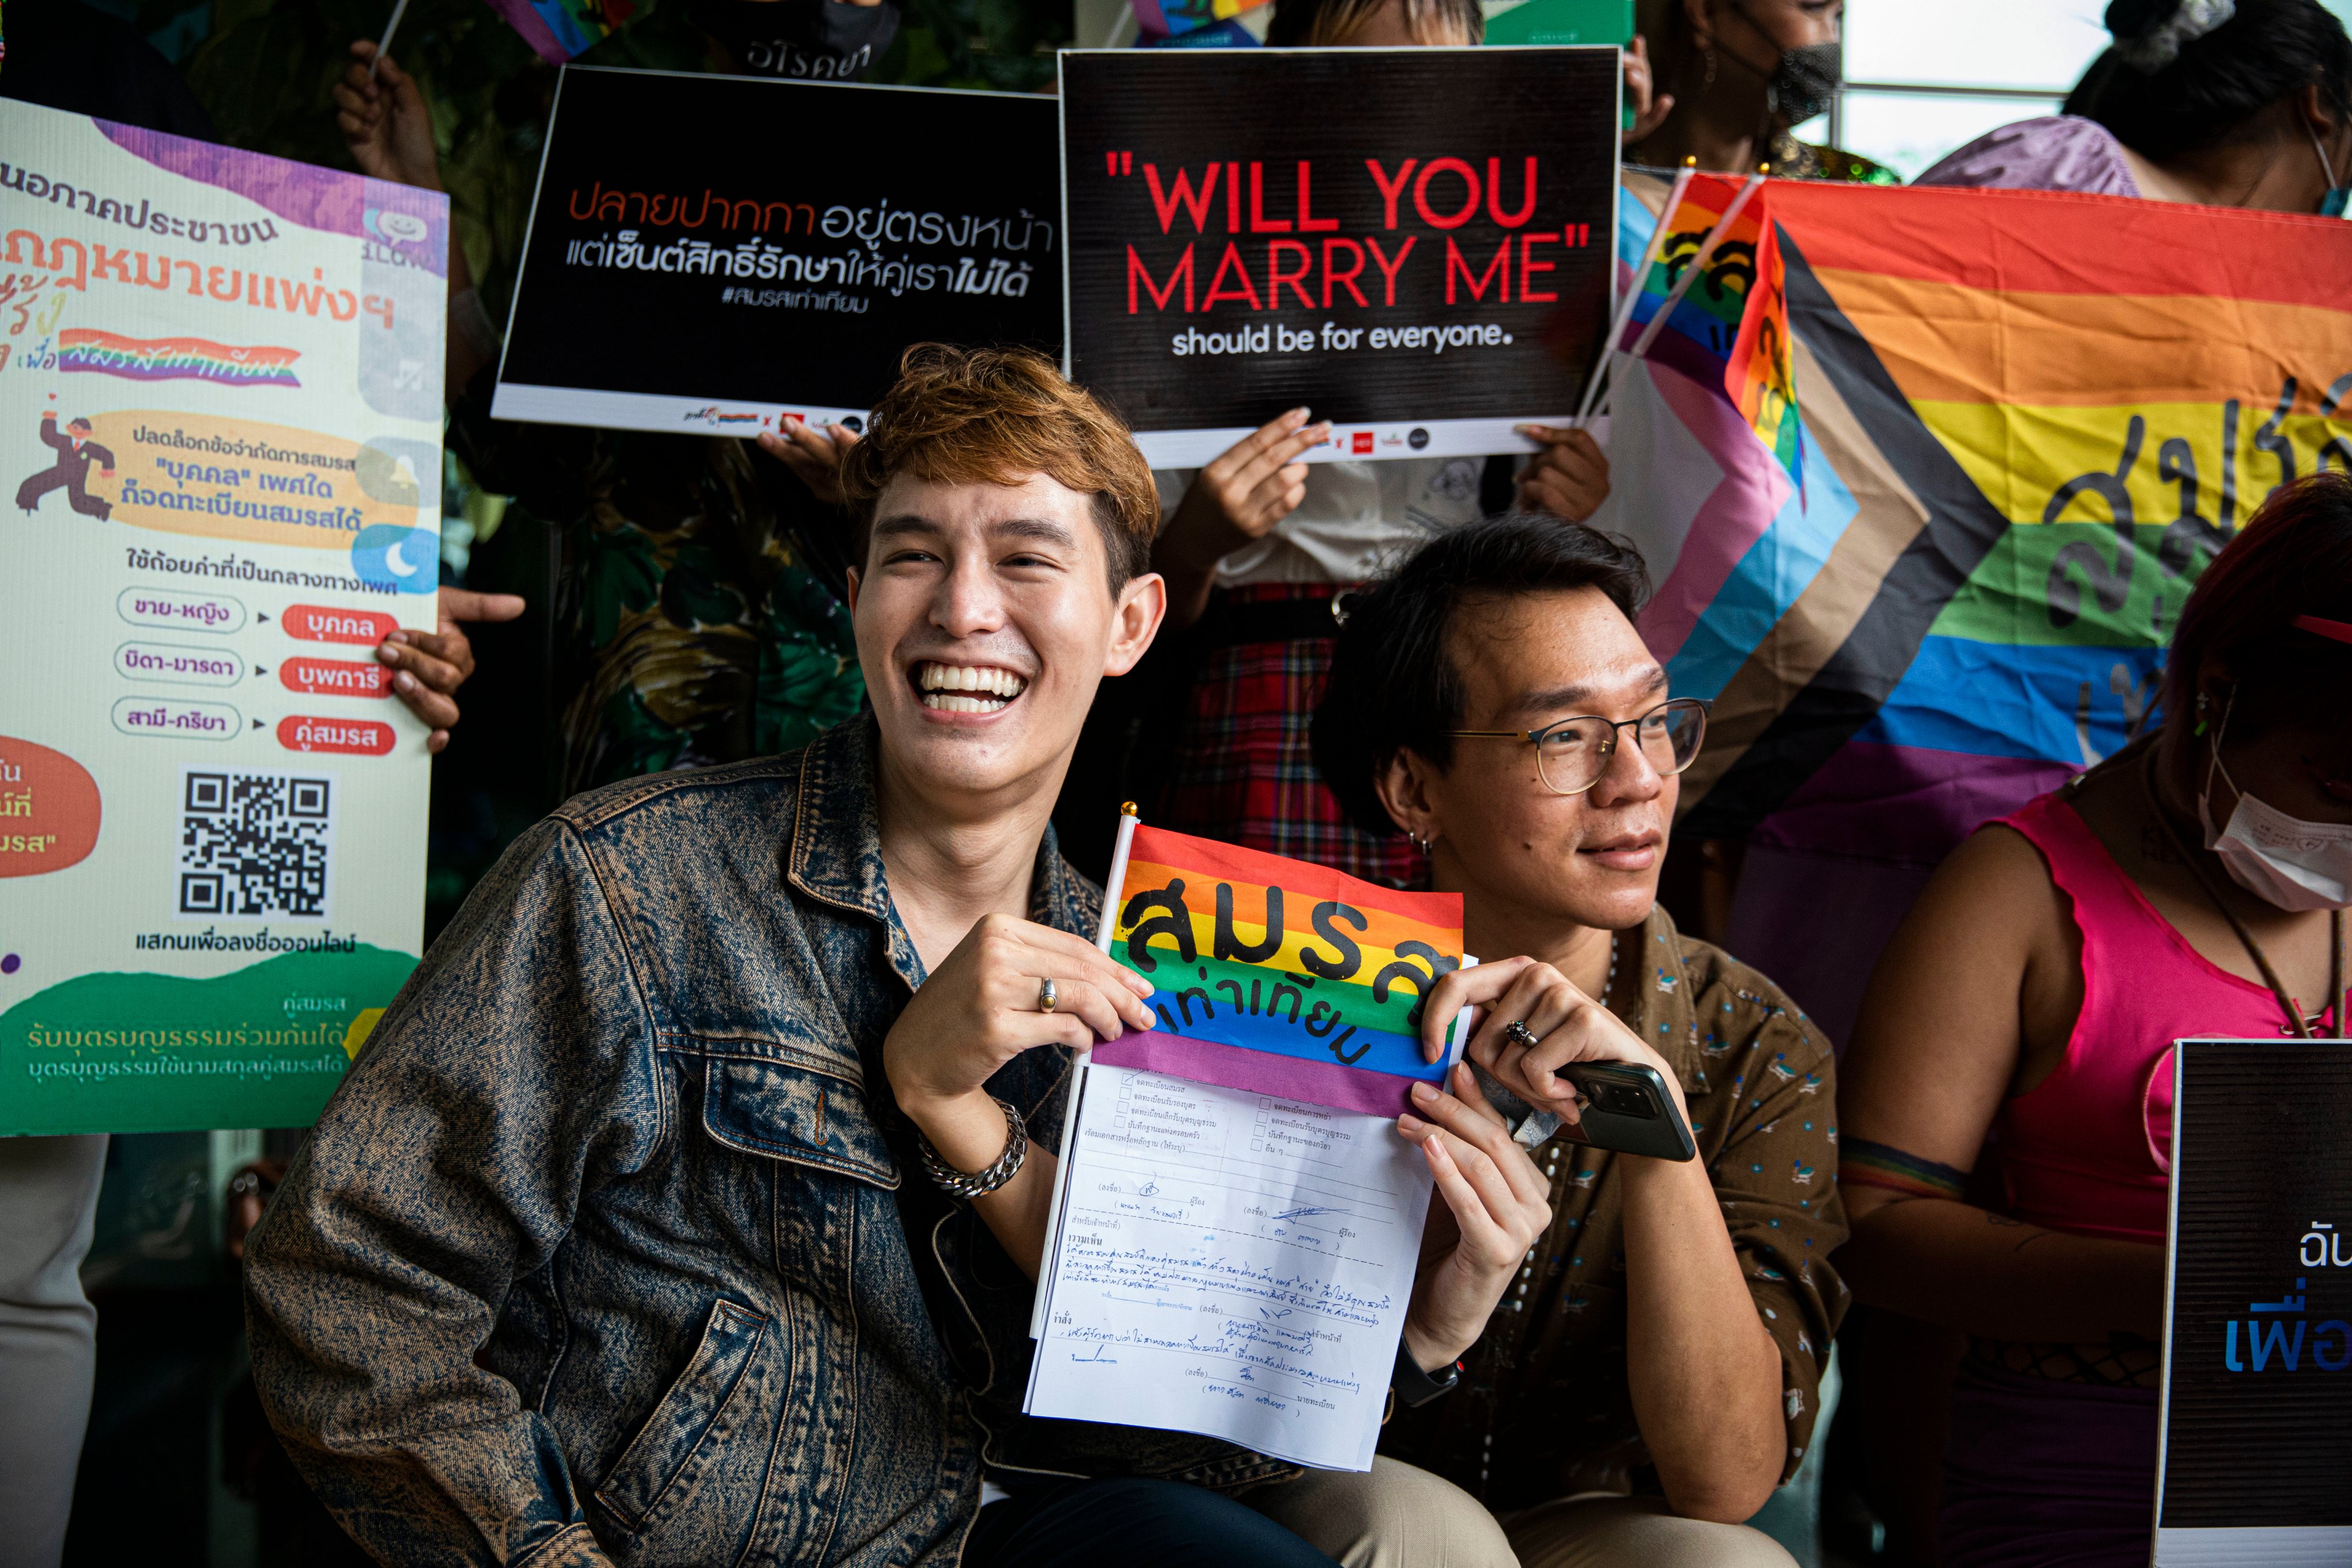 Celebração do Dia de São Valentim, também conhecido como Dia dos Namorados, em Banguecoque, na Tailândia, com protestos em defesa do casamento entre pessoas do mesmo sexo